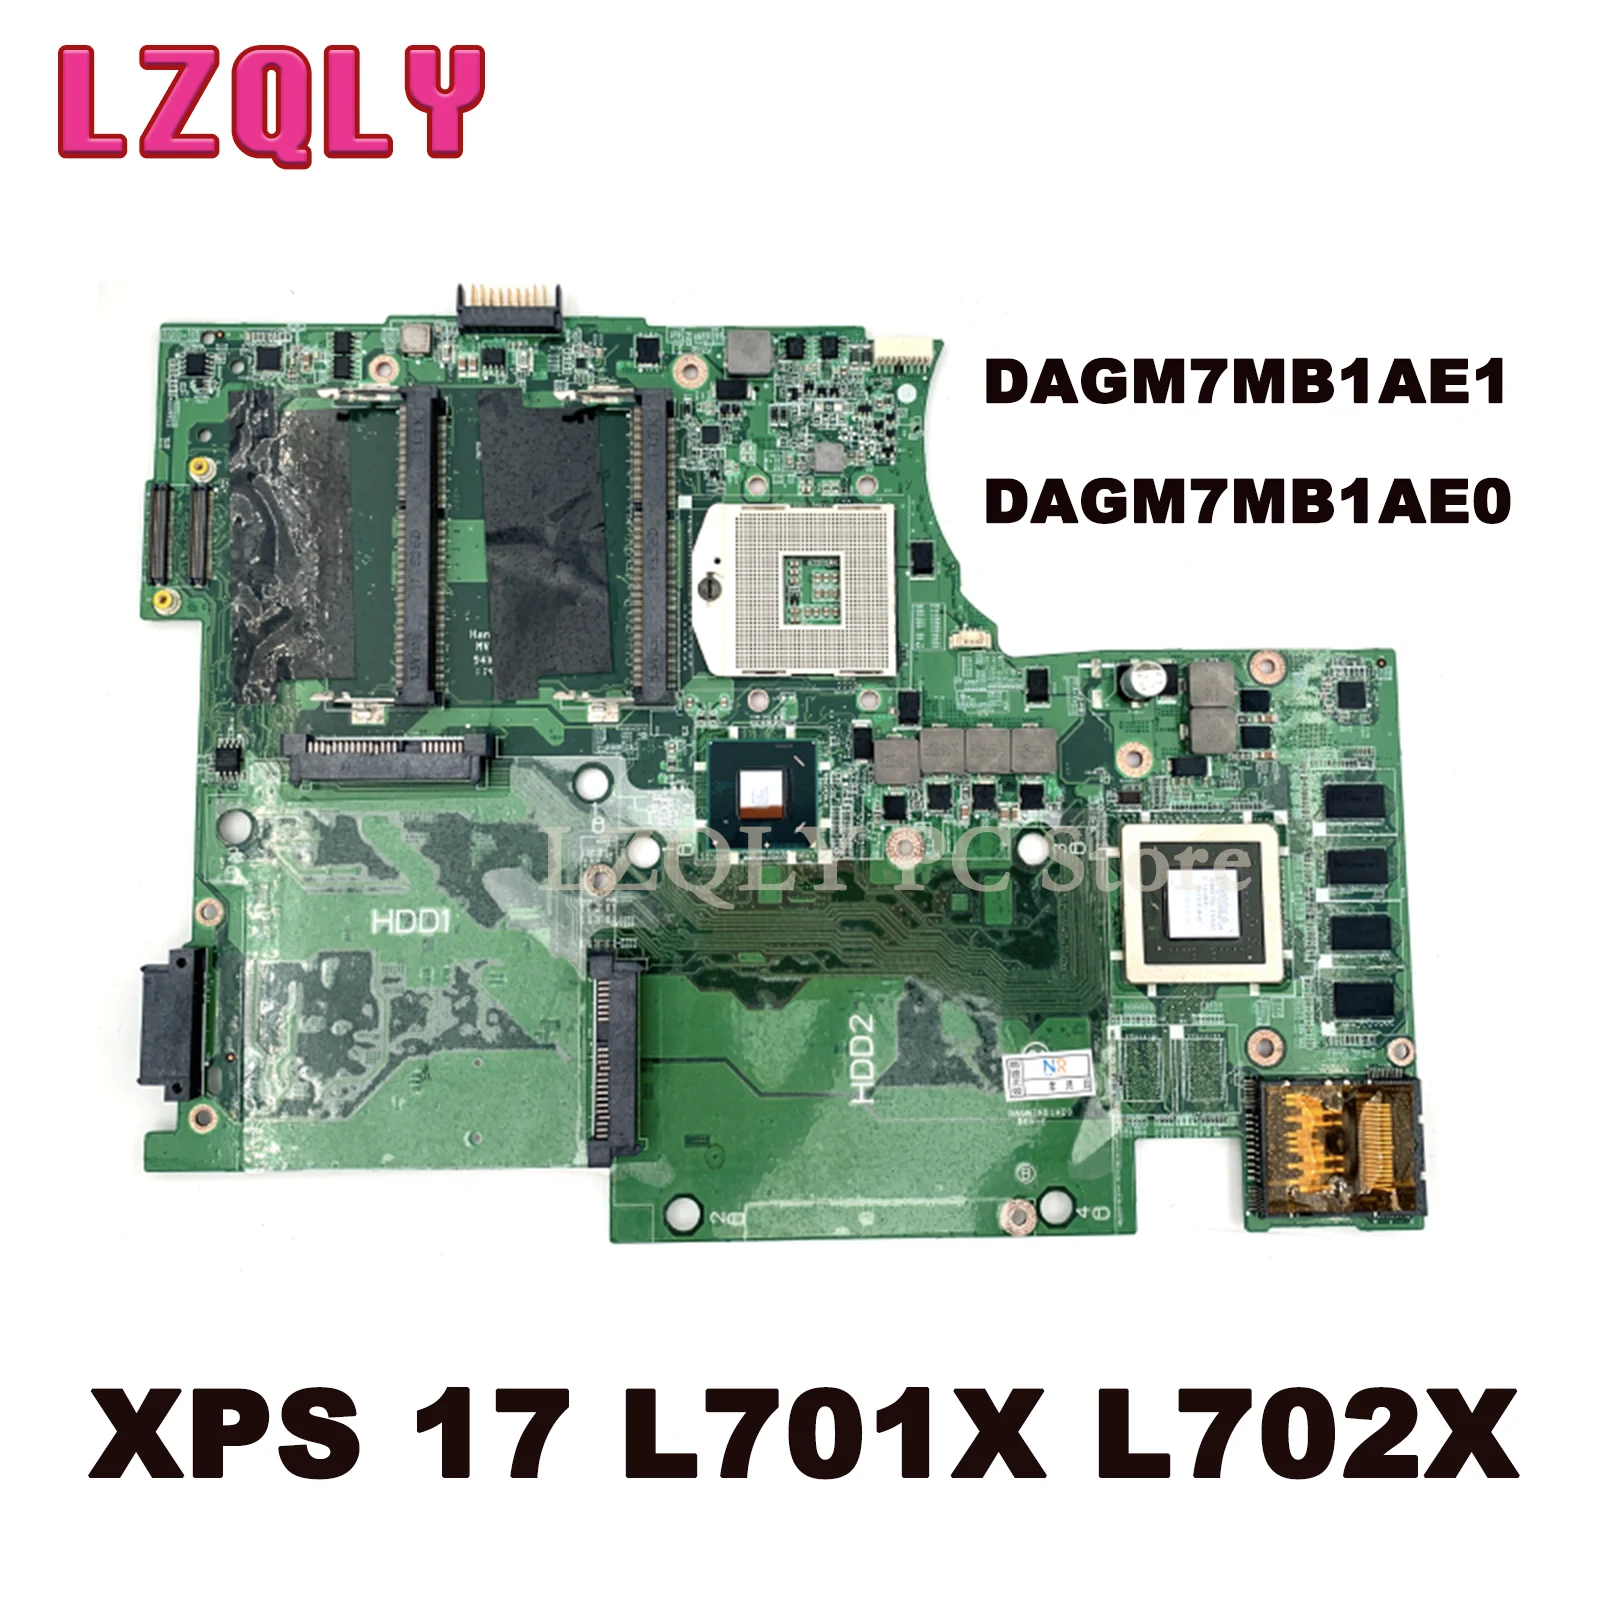 LZQLY DAGM7MB1AE1 DAGM7MB1AE0 main board for dell L702X L701X laptop motherboard GT555M 1GB GPU HM67 fully test